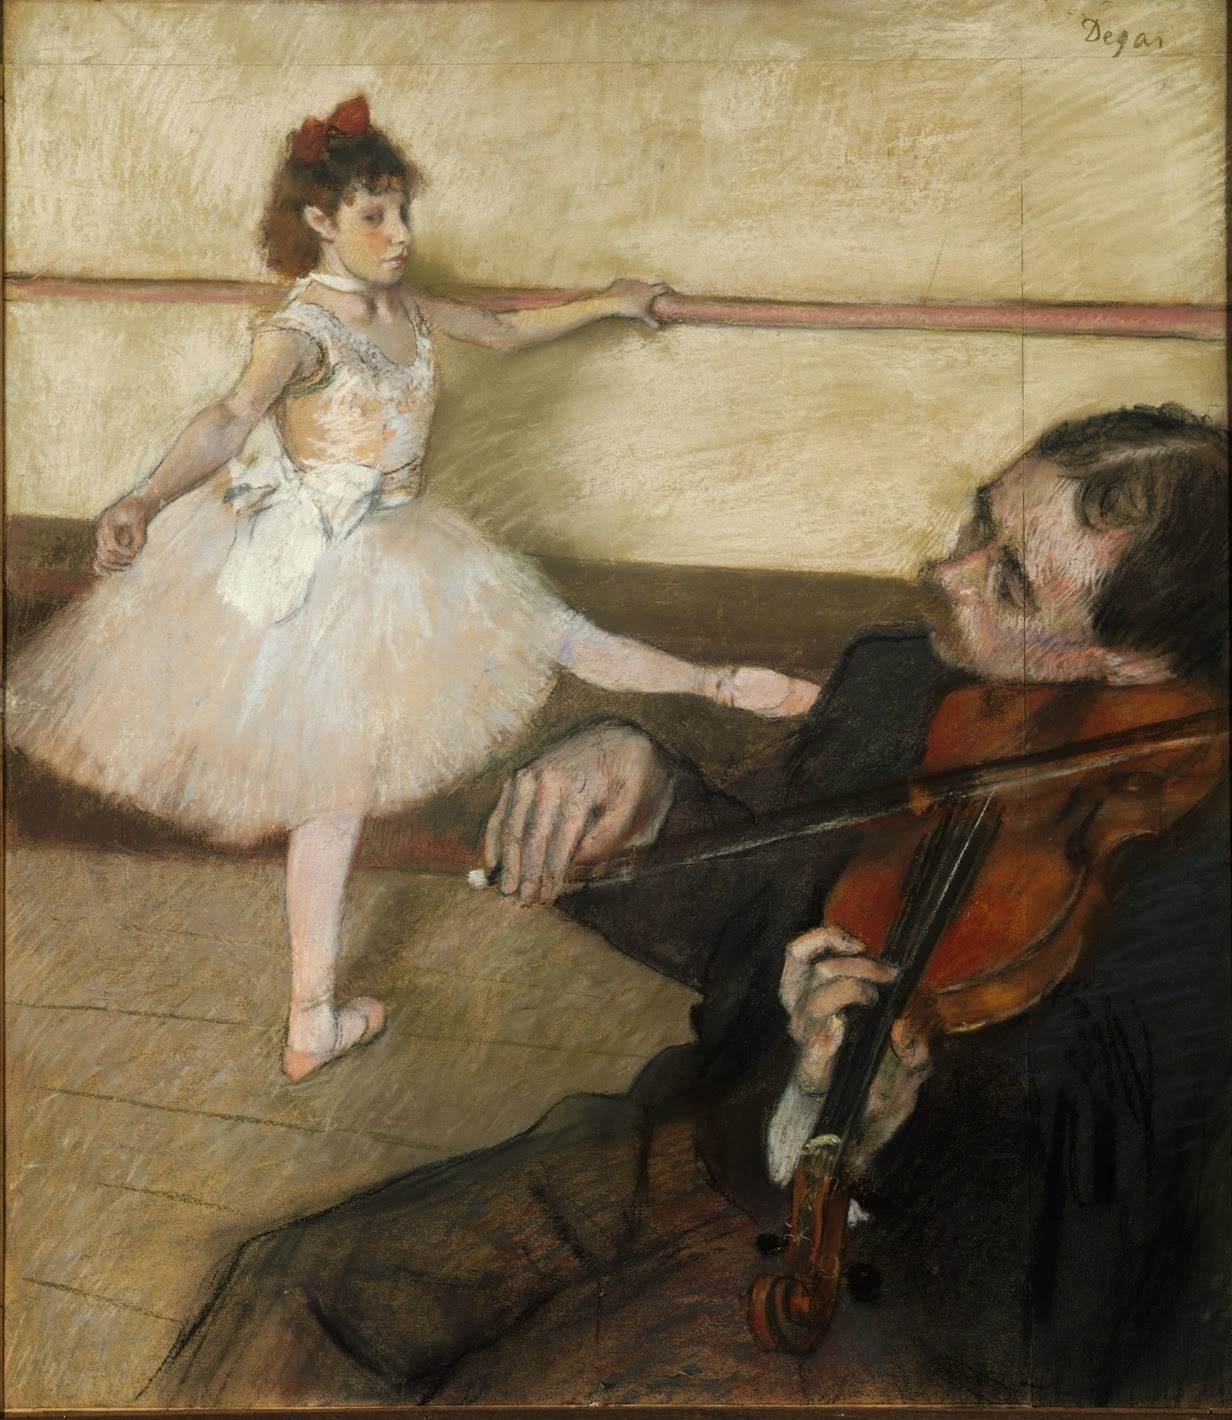 Edgar+Degas-1834-1917 (190).jpg